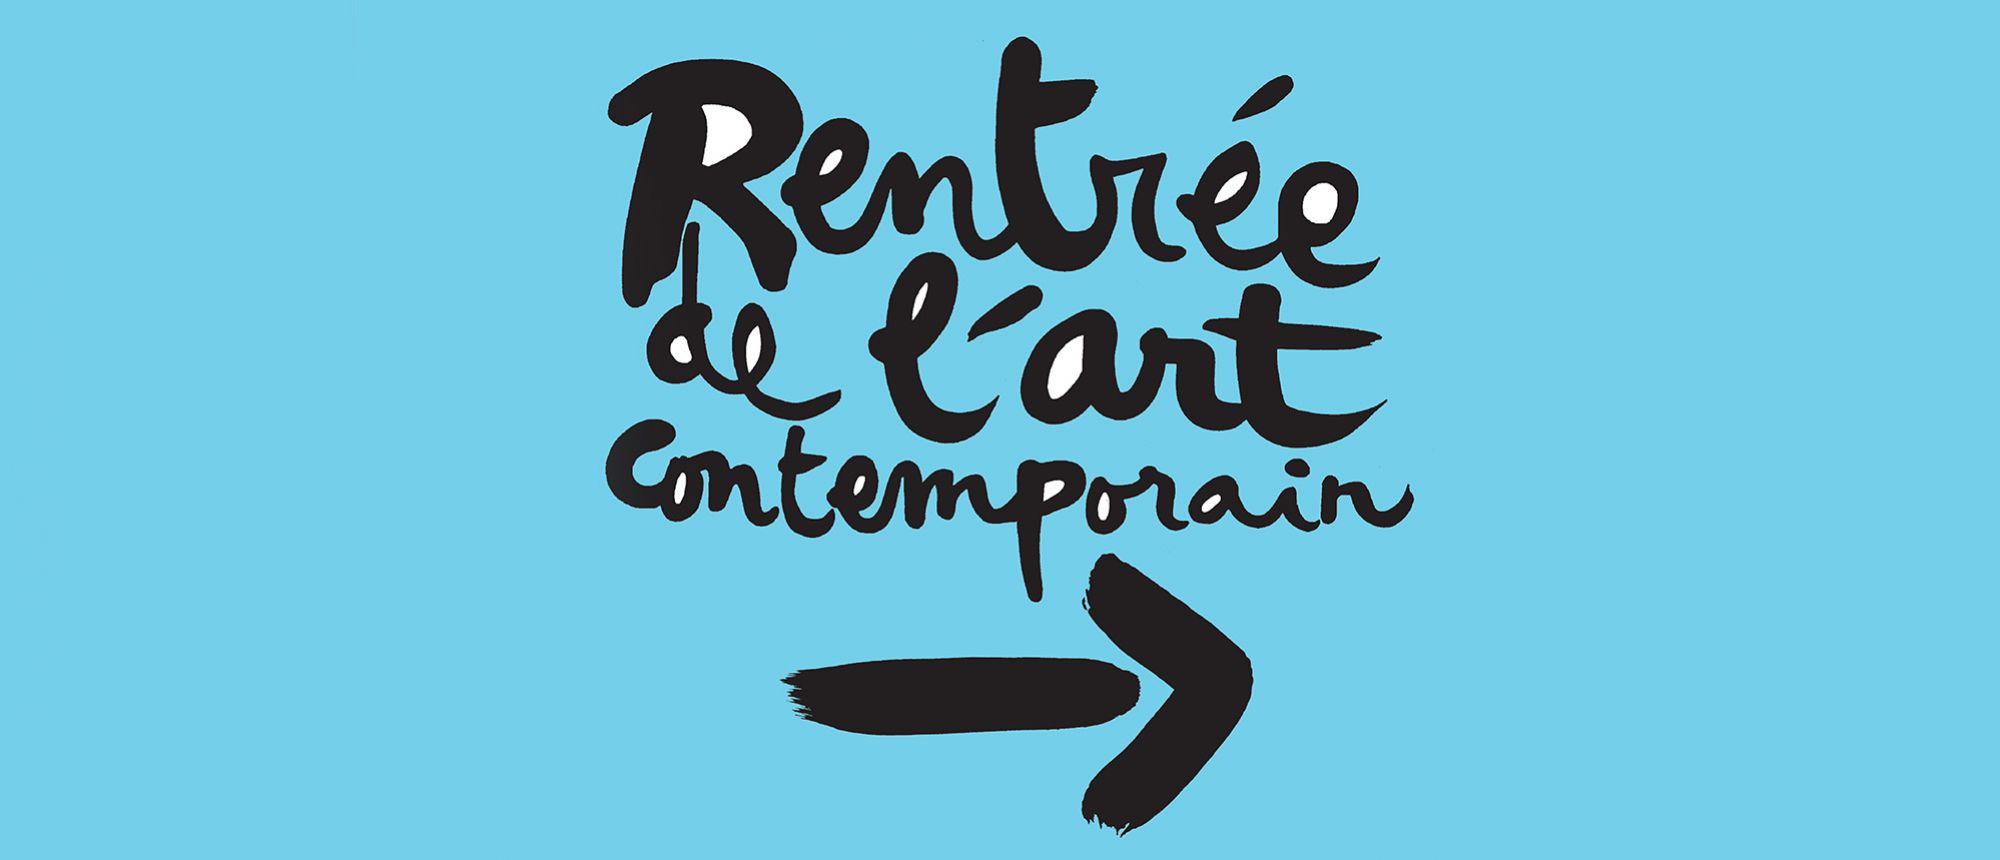 RENTRÉE DE L'ART CONTEMPORAIN DU 26 AU 28 AOÛT 2016